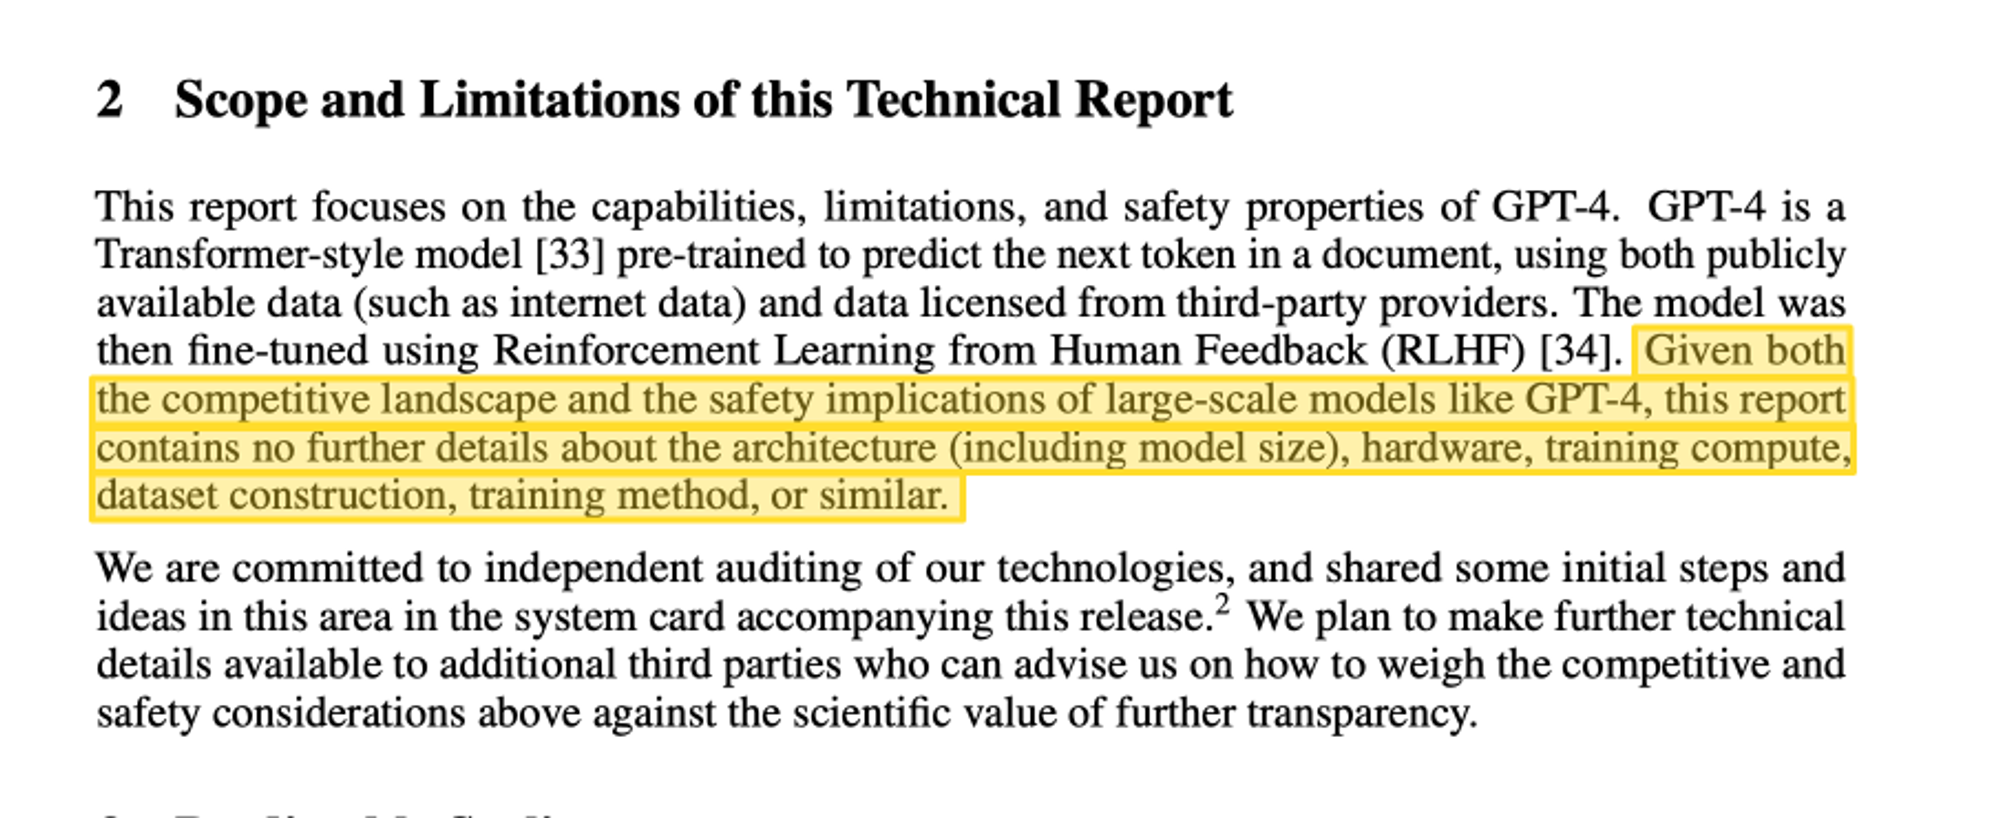 图 4. “鉴于像 GPT-4 这样的大规模模型的竞争状况和安全影响，本报告没有包含关于架构（包括模型大小）、硬件、训练计算、数据集构建、训练方法或类似的进一步细节。”